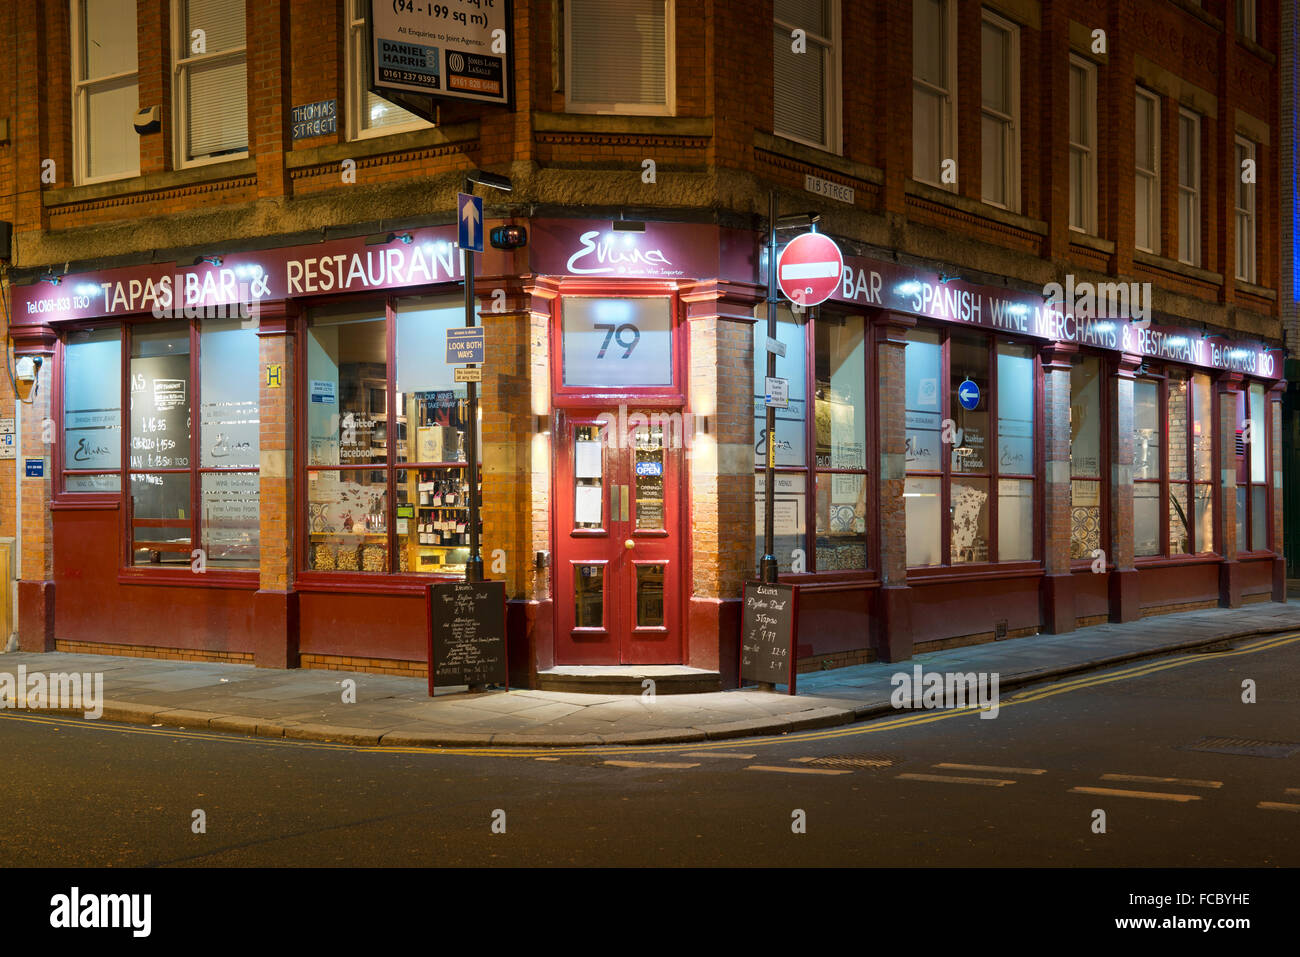 Evuna, il ristorante spagnolo, bar di tapas e vino importatore, situato nell'angolo di Thomas Street e Tib Street a Manchester. Foto Stock